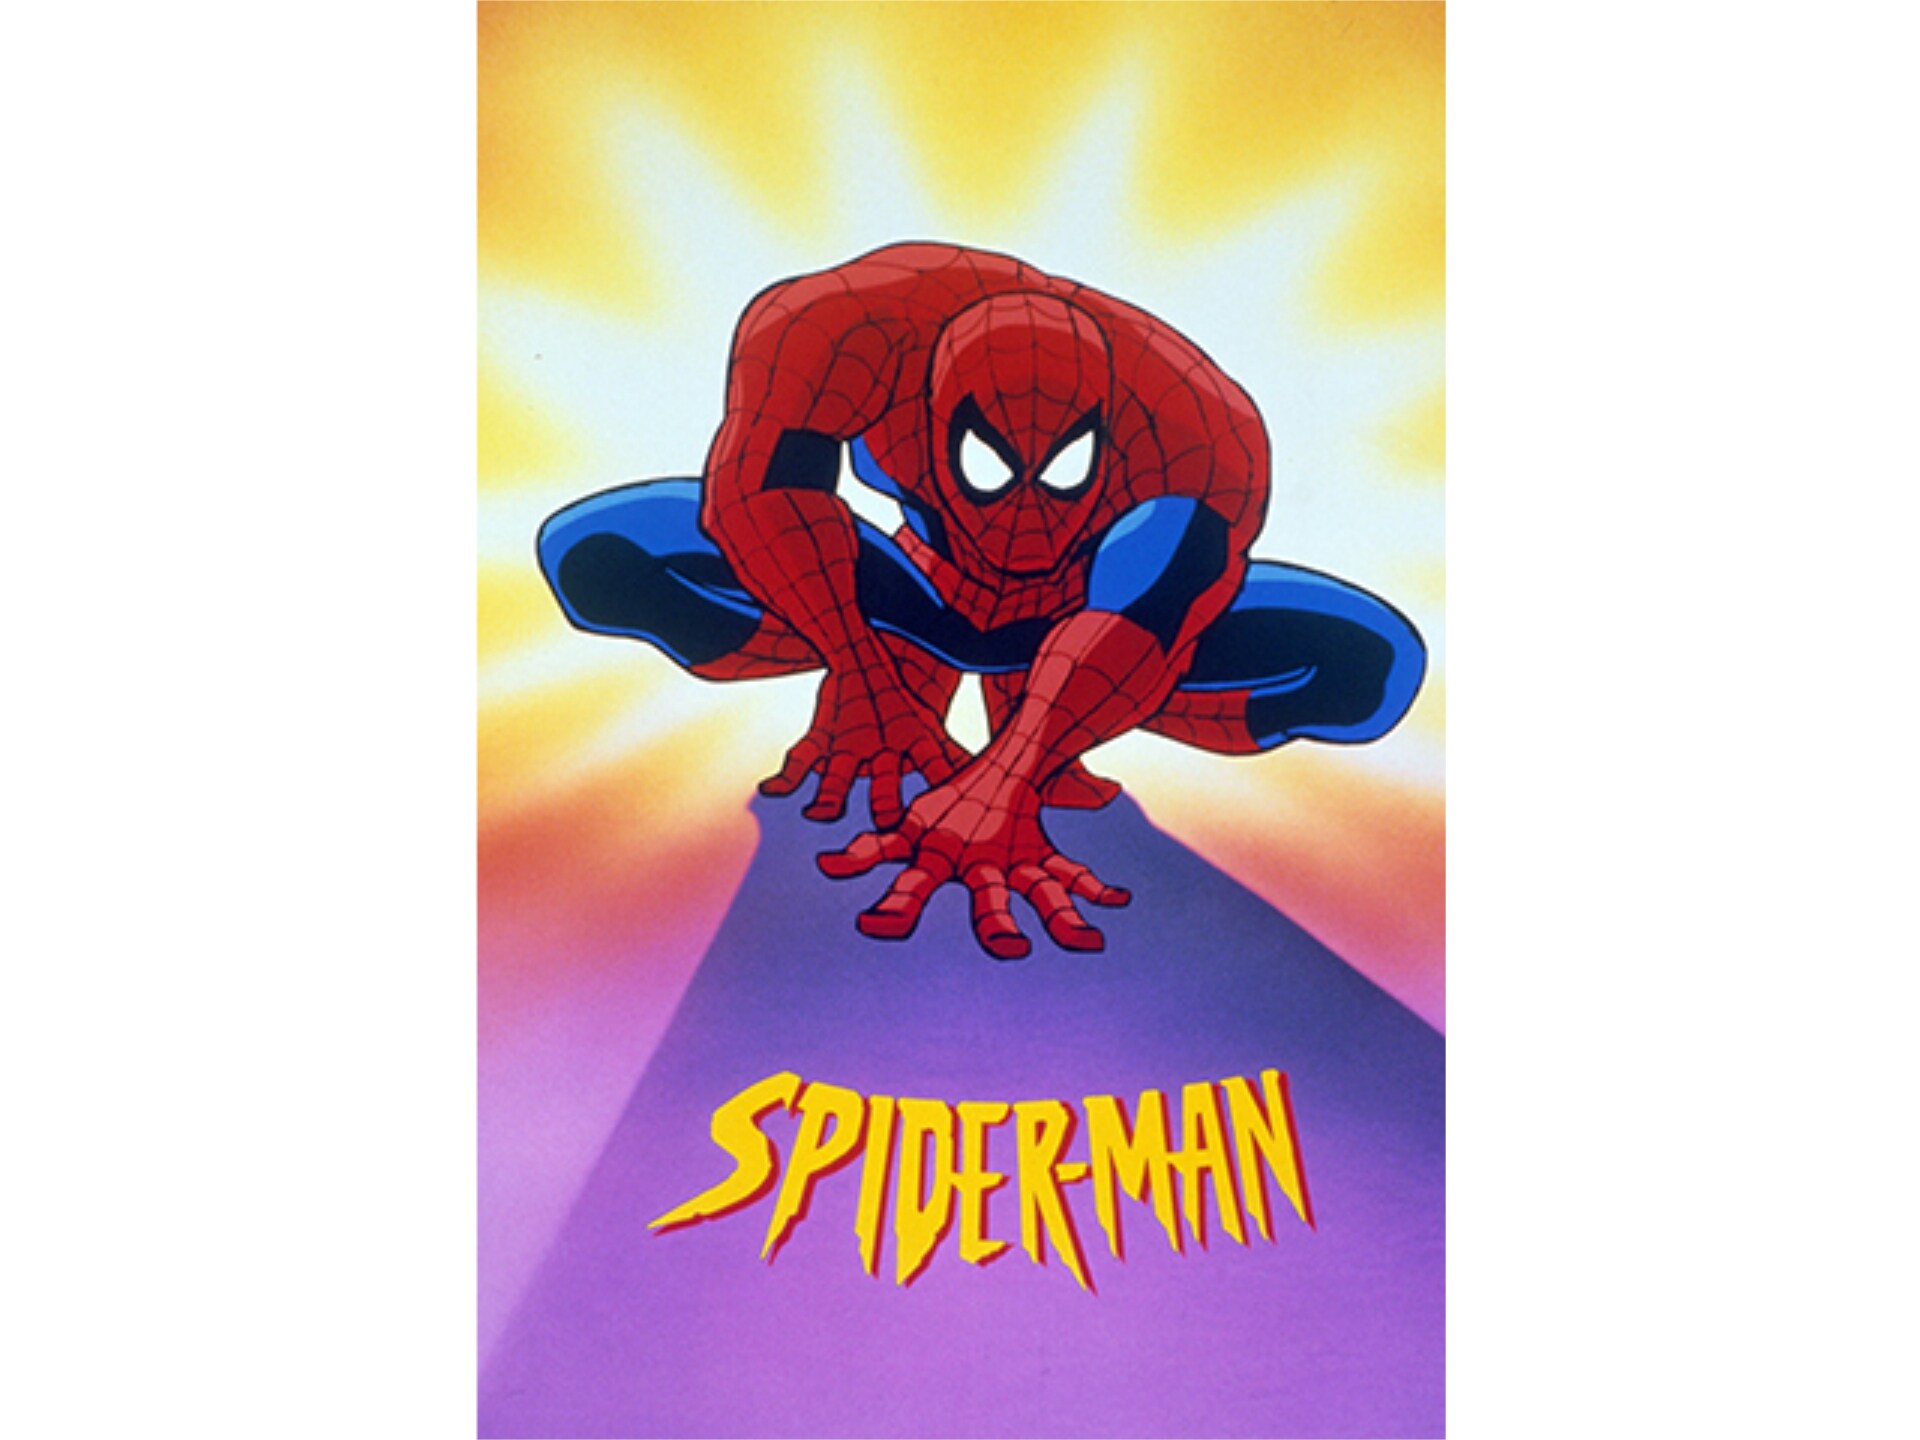 スパイダーマン 1 50のまとめフル動画 初月無料 動画配信サービスのビデオマーケット